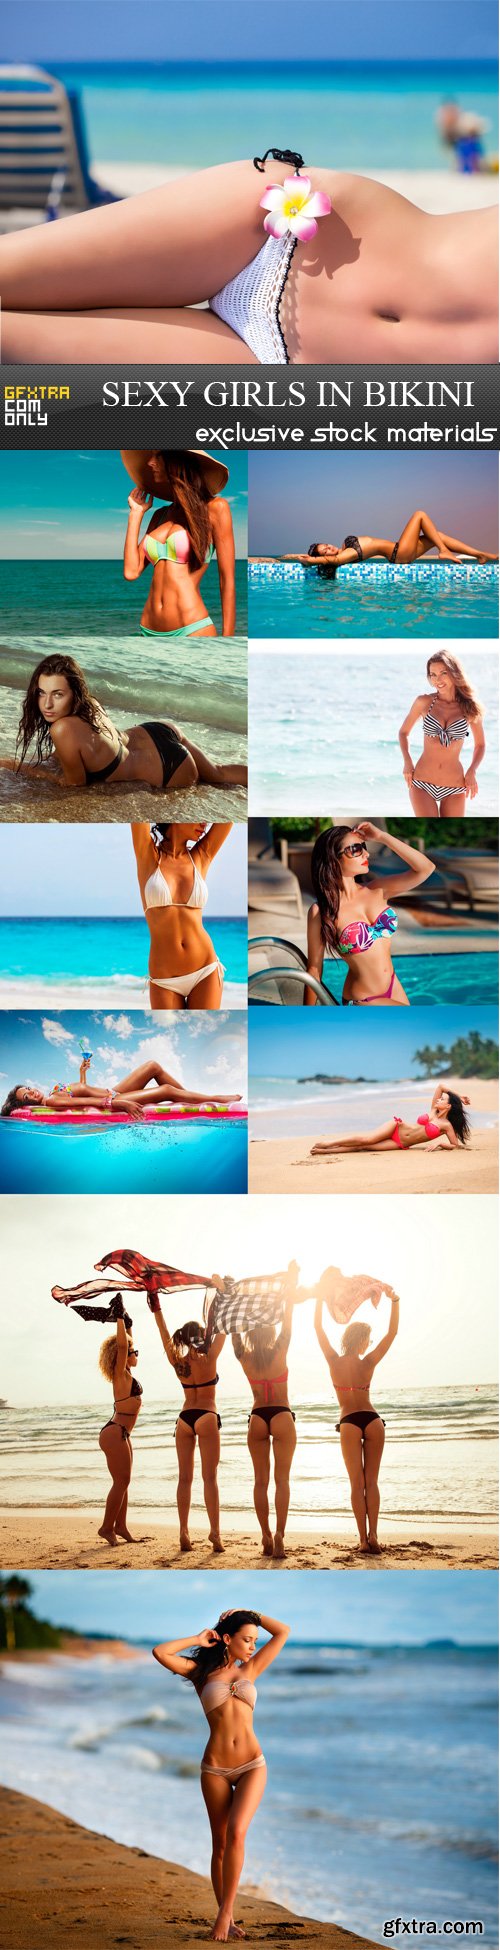 Sexy girls in bikini-11 UHQ JPEG